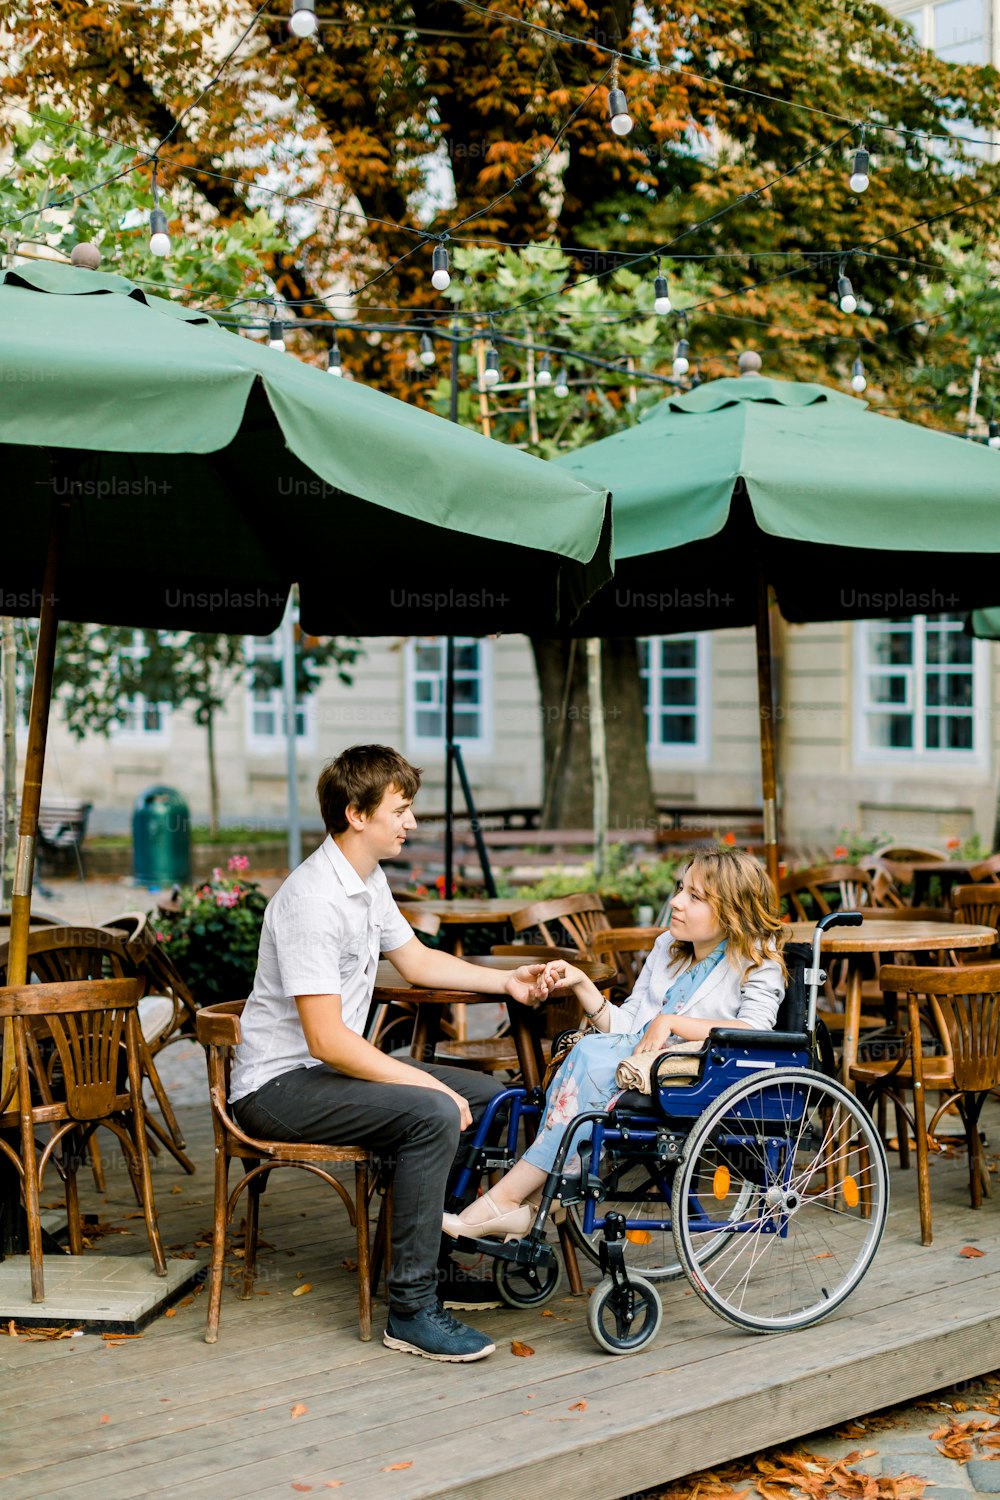 휠체어를 탄 젊은 예쁜 여자가 남자 남자친구와 손을 잡고 구시가지의 야외 카페에서 시간을 보내고 있다.